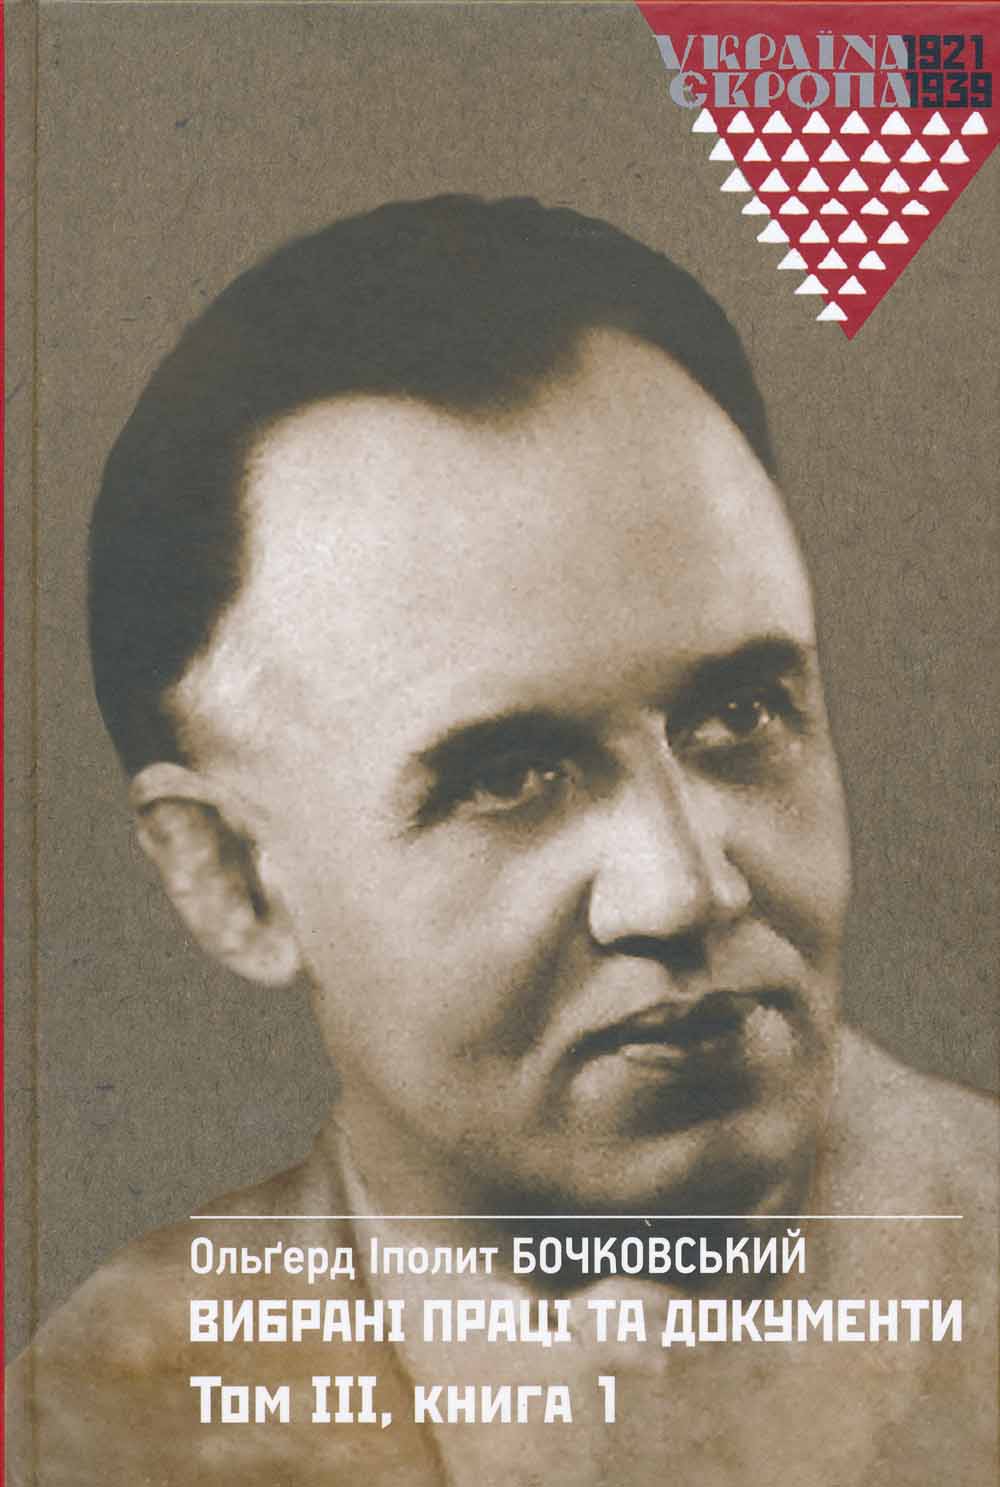 Olgerd Boczkowski